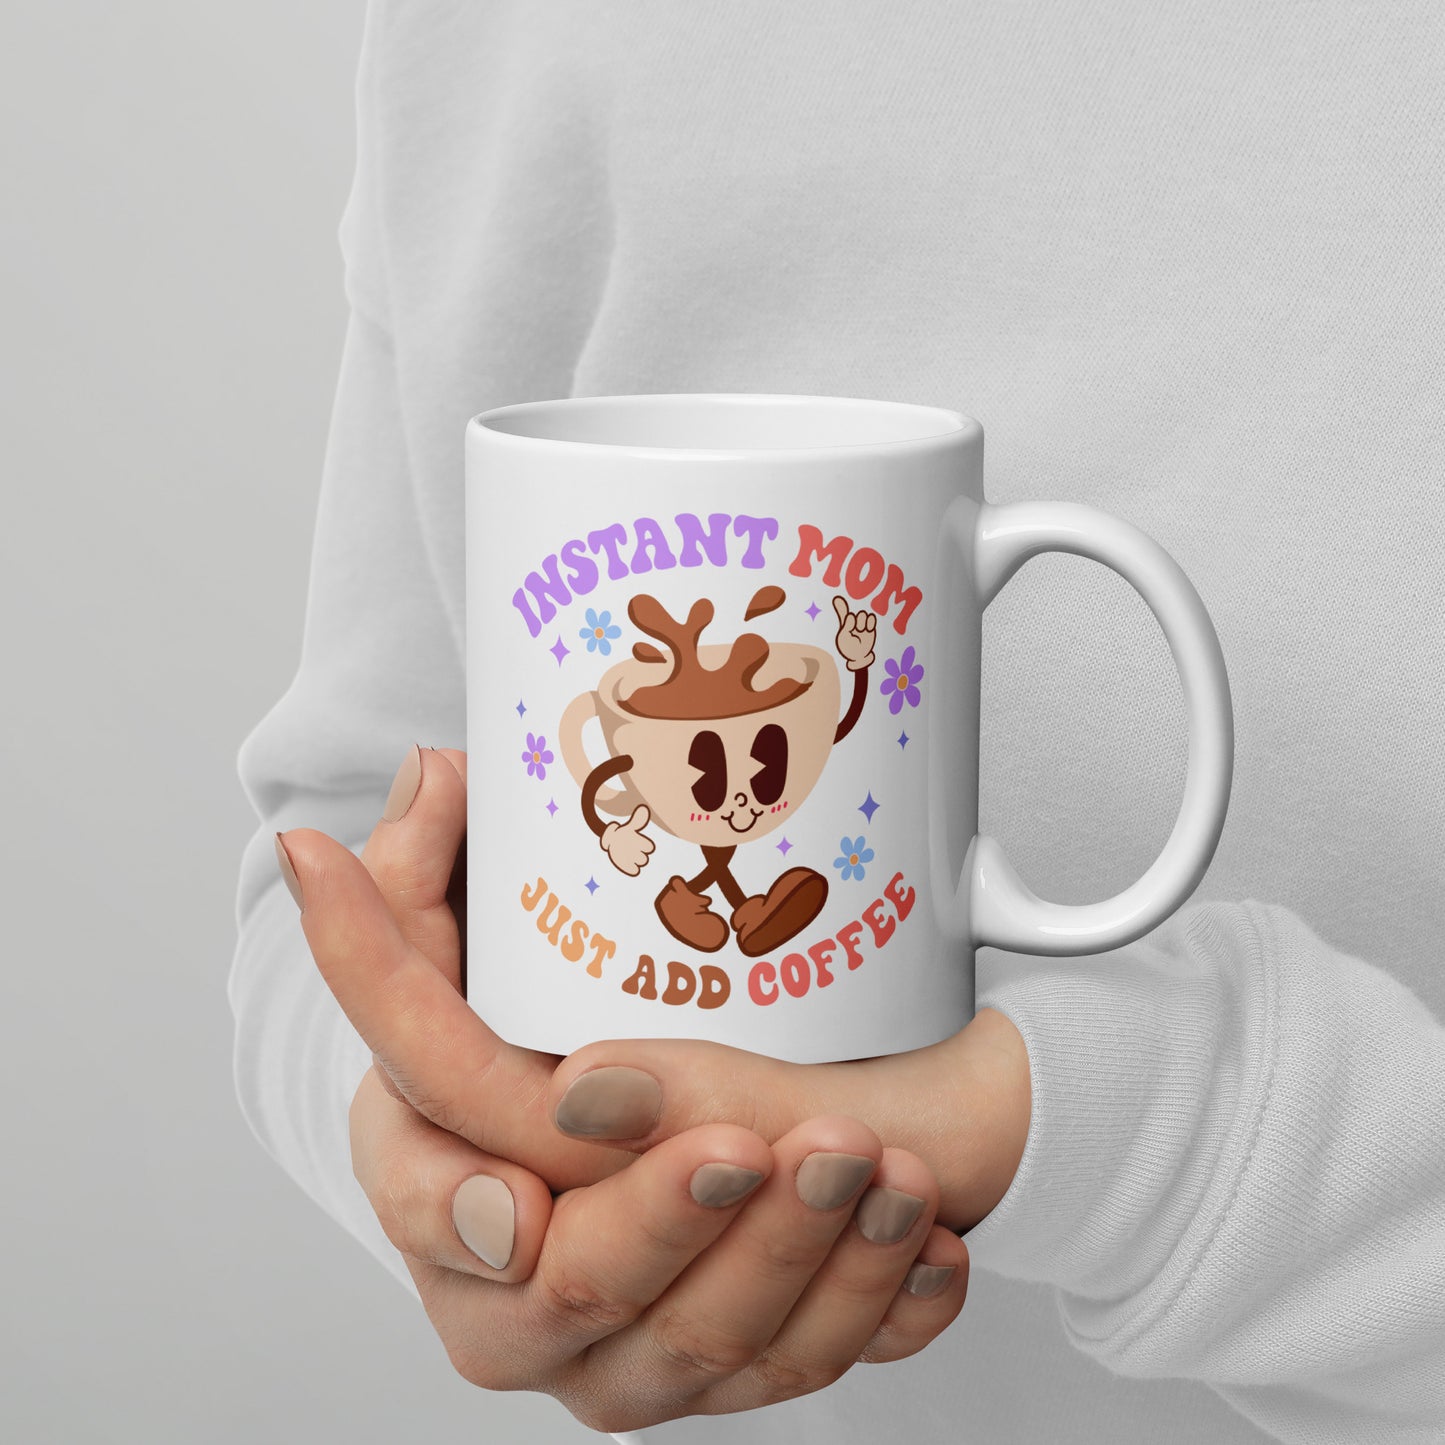 "Instant Mom: Just Add Coffee" Mug